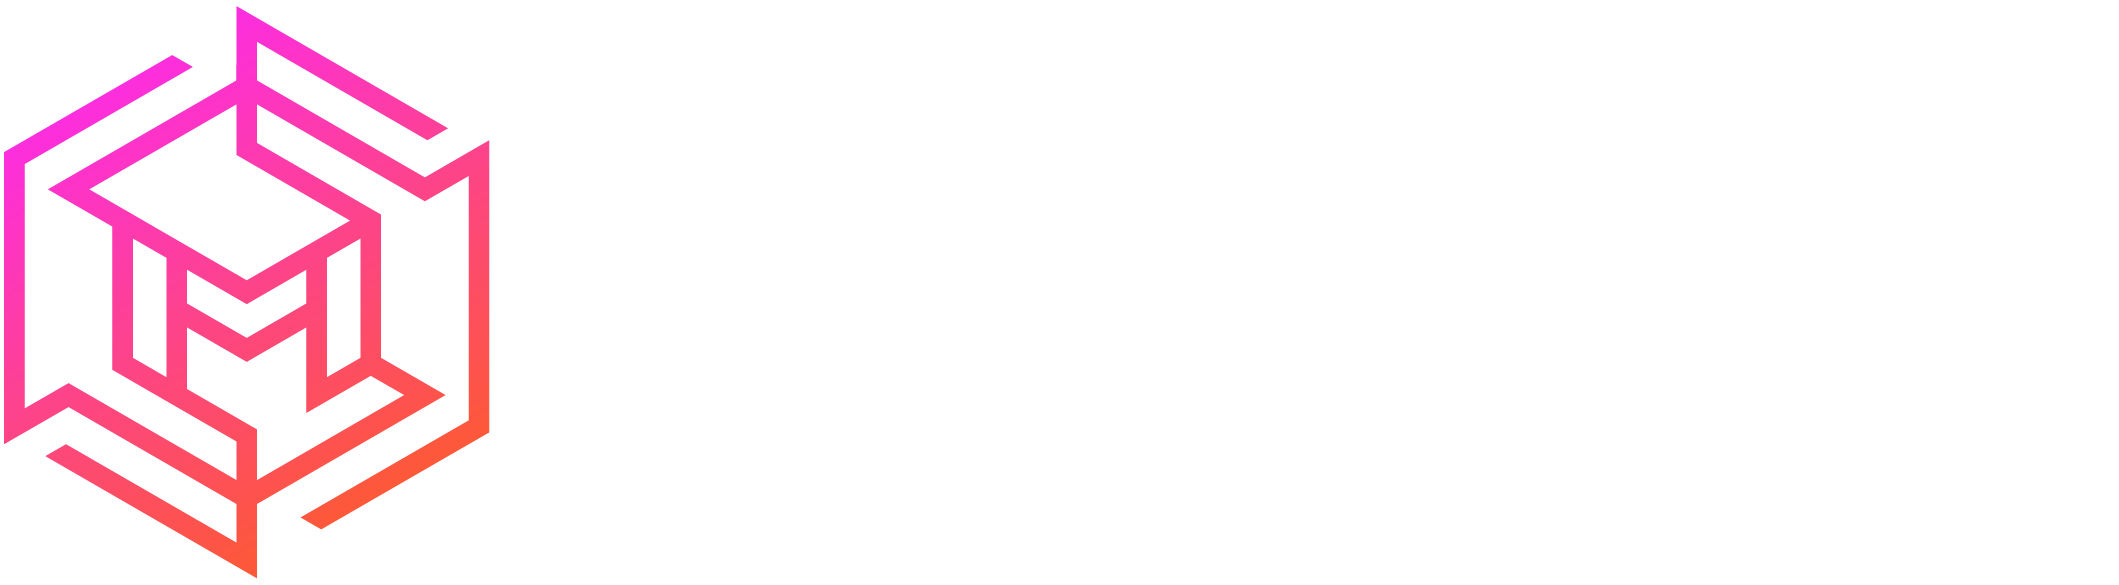 Metacurio